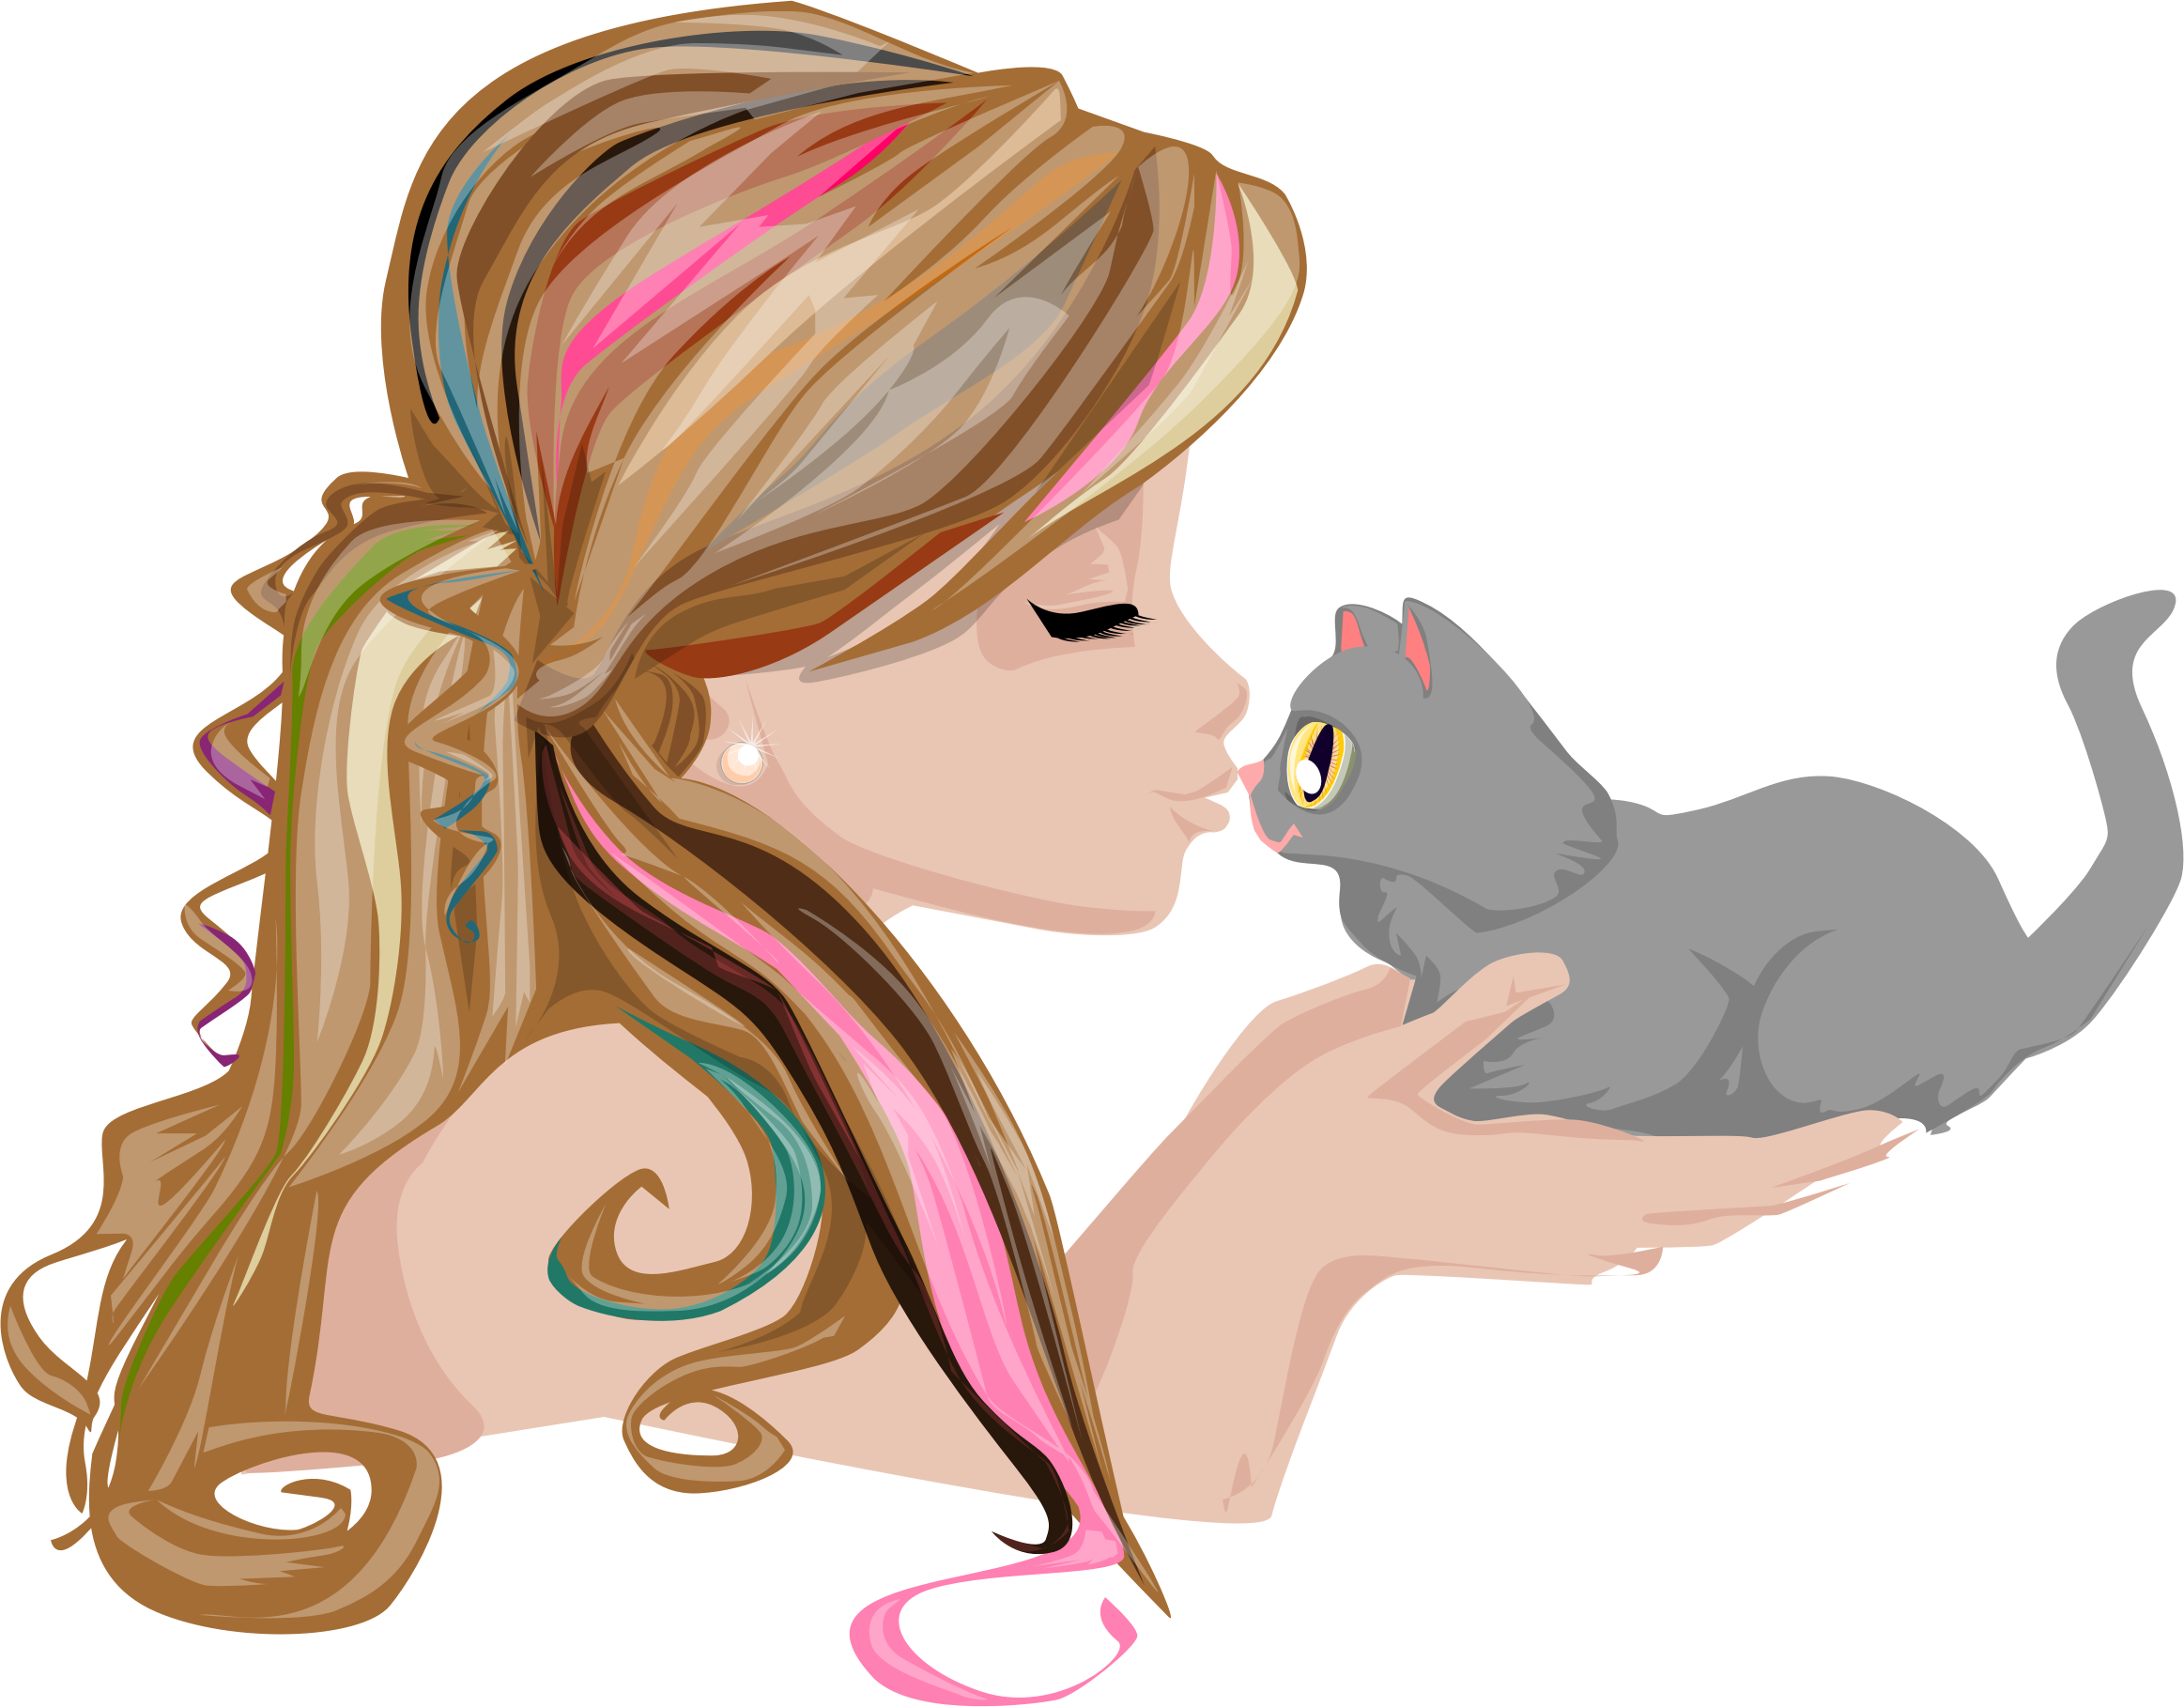 Kittens clipart illustration. Girl kissing kitten big